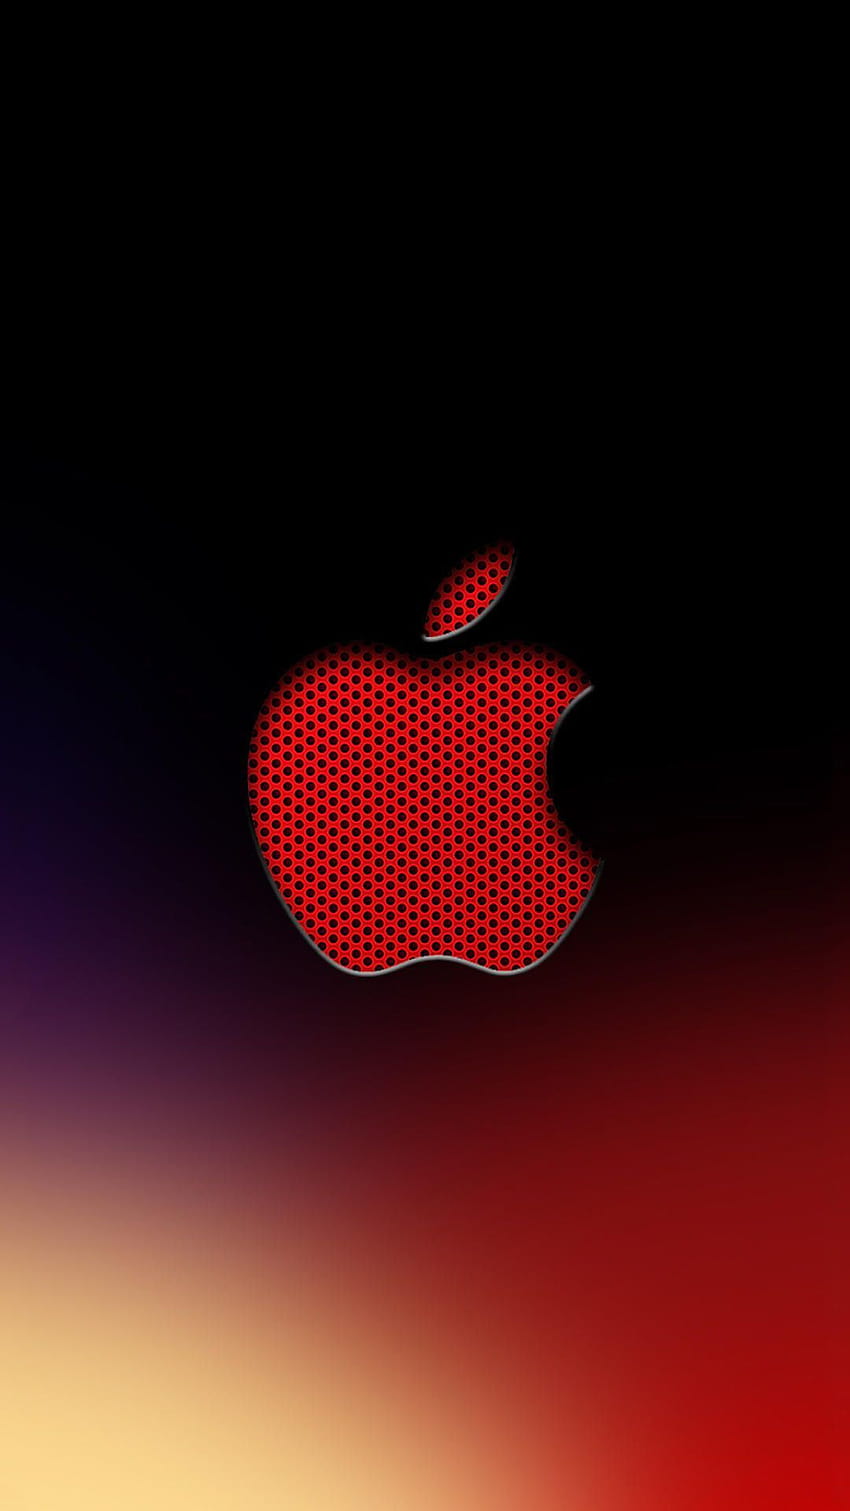 iPhone apel merah wallpaper ponsel HD